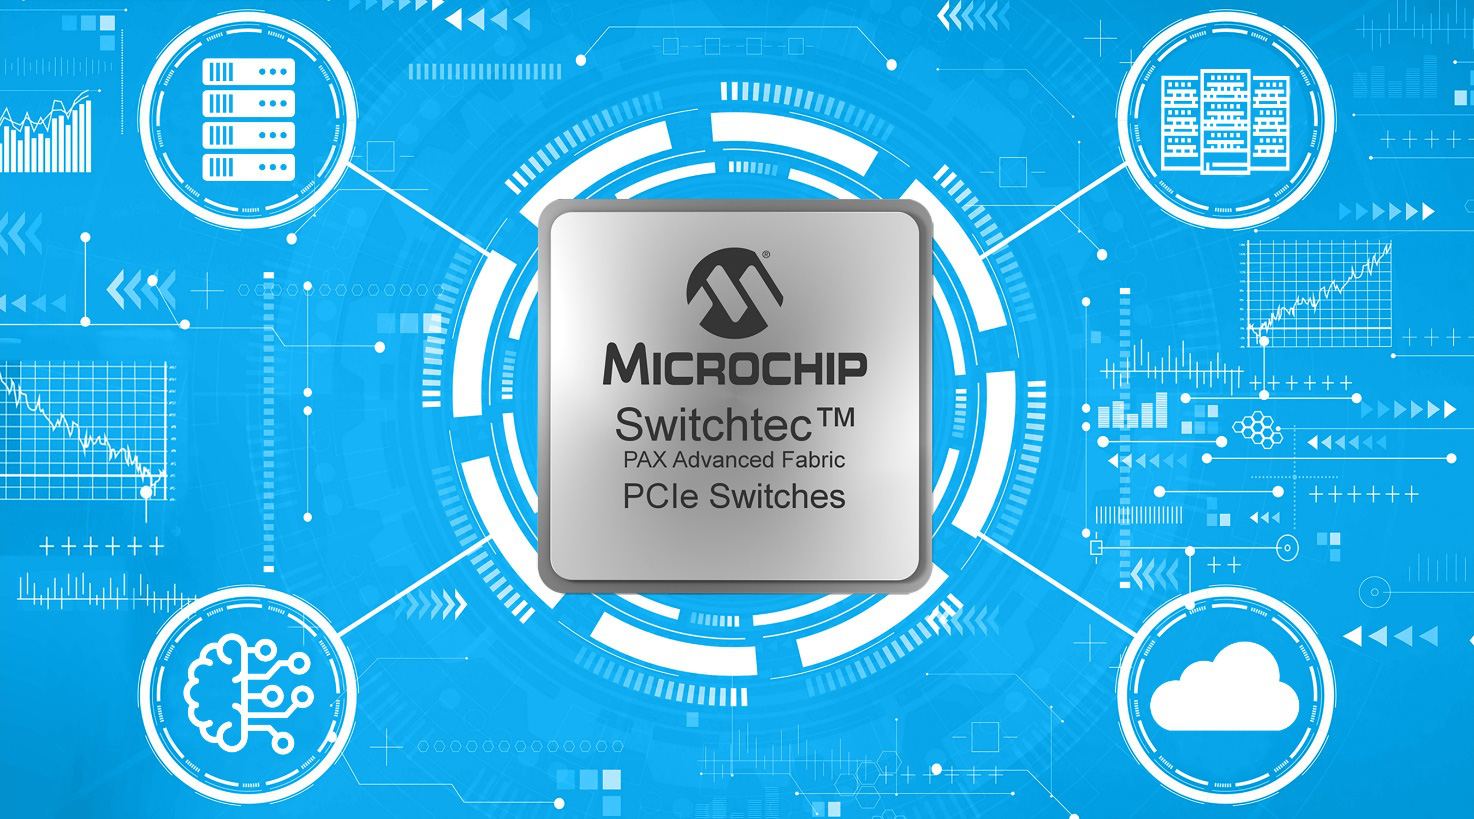 Các thiết bị chuyển mạch Switchtec™ PAX Advanced Fabric Gen 4 PCIe của Microchip được phát hành để sản xuất - Ảnh 1.